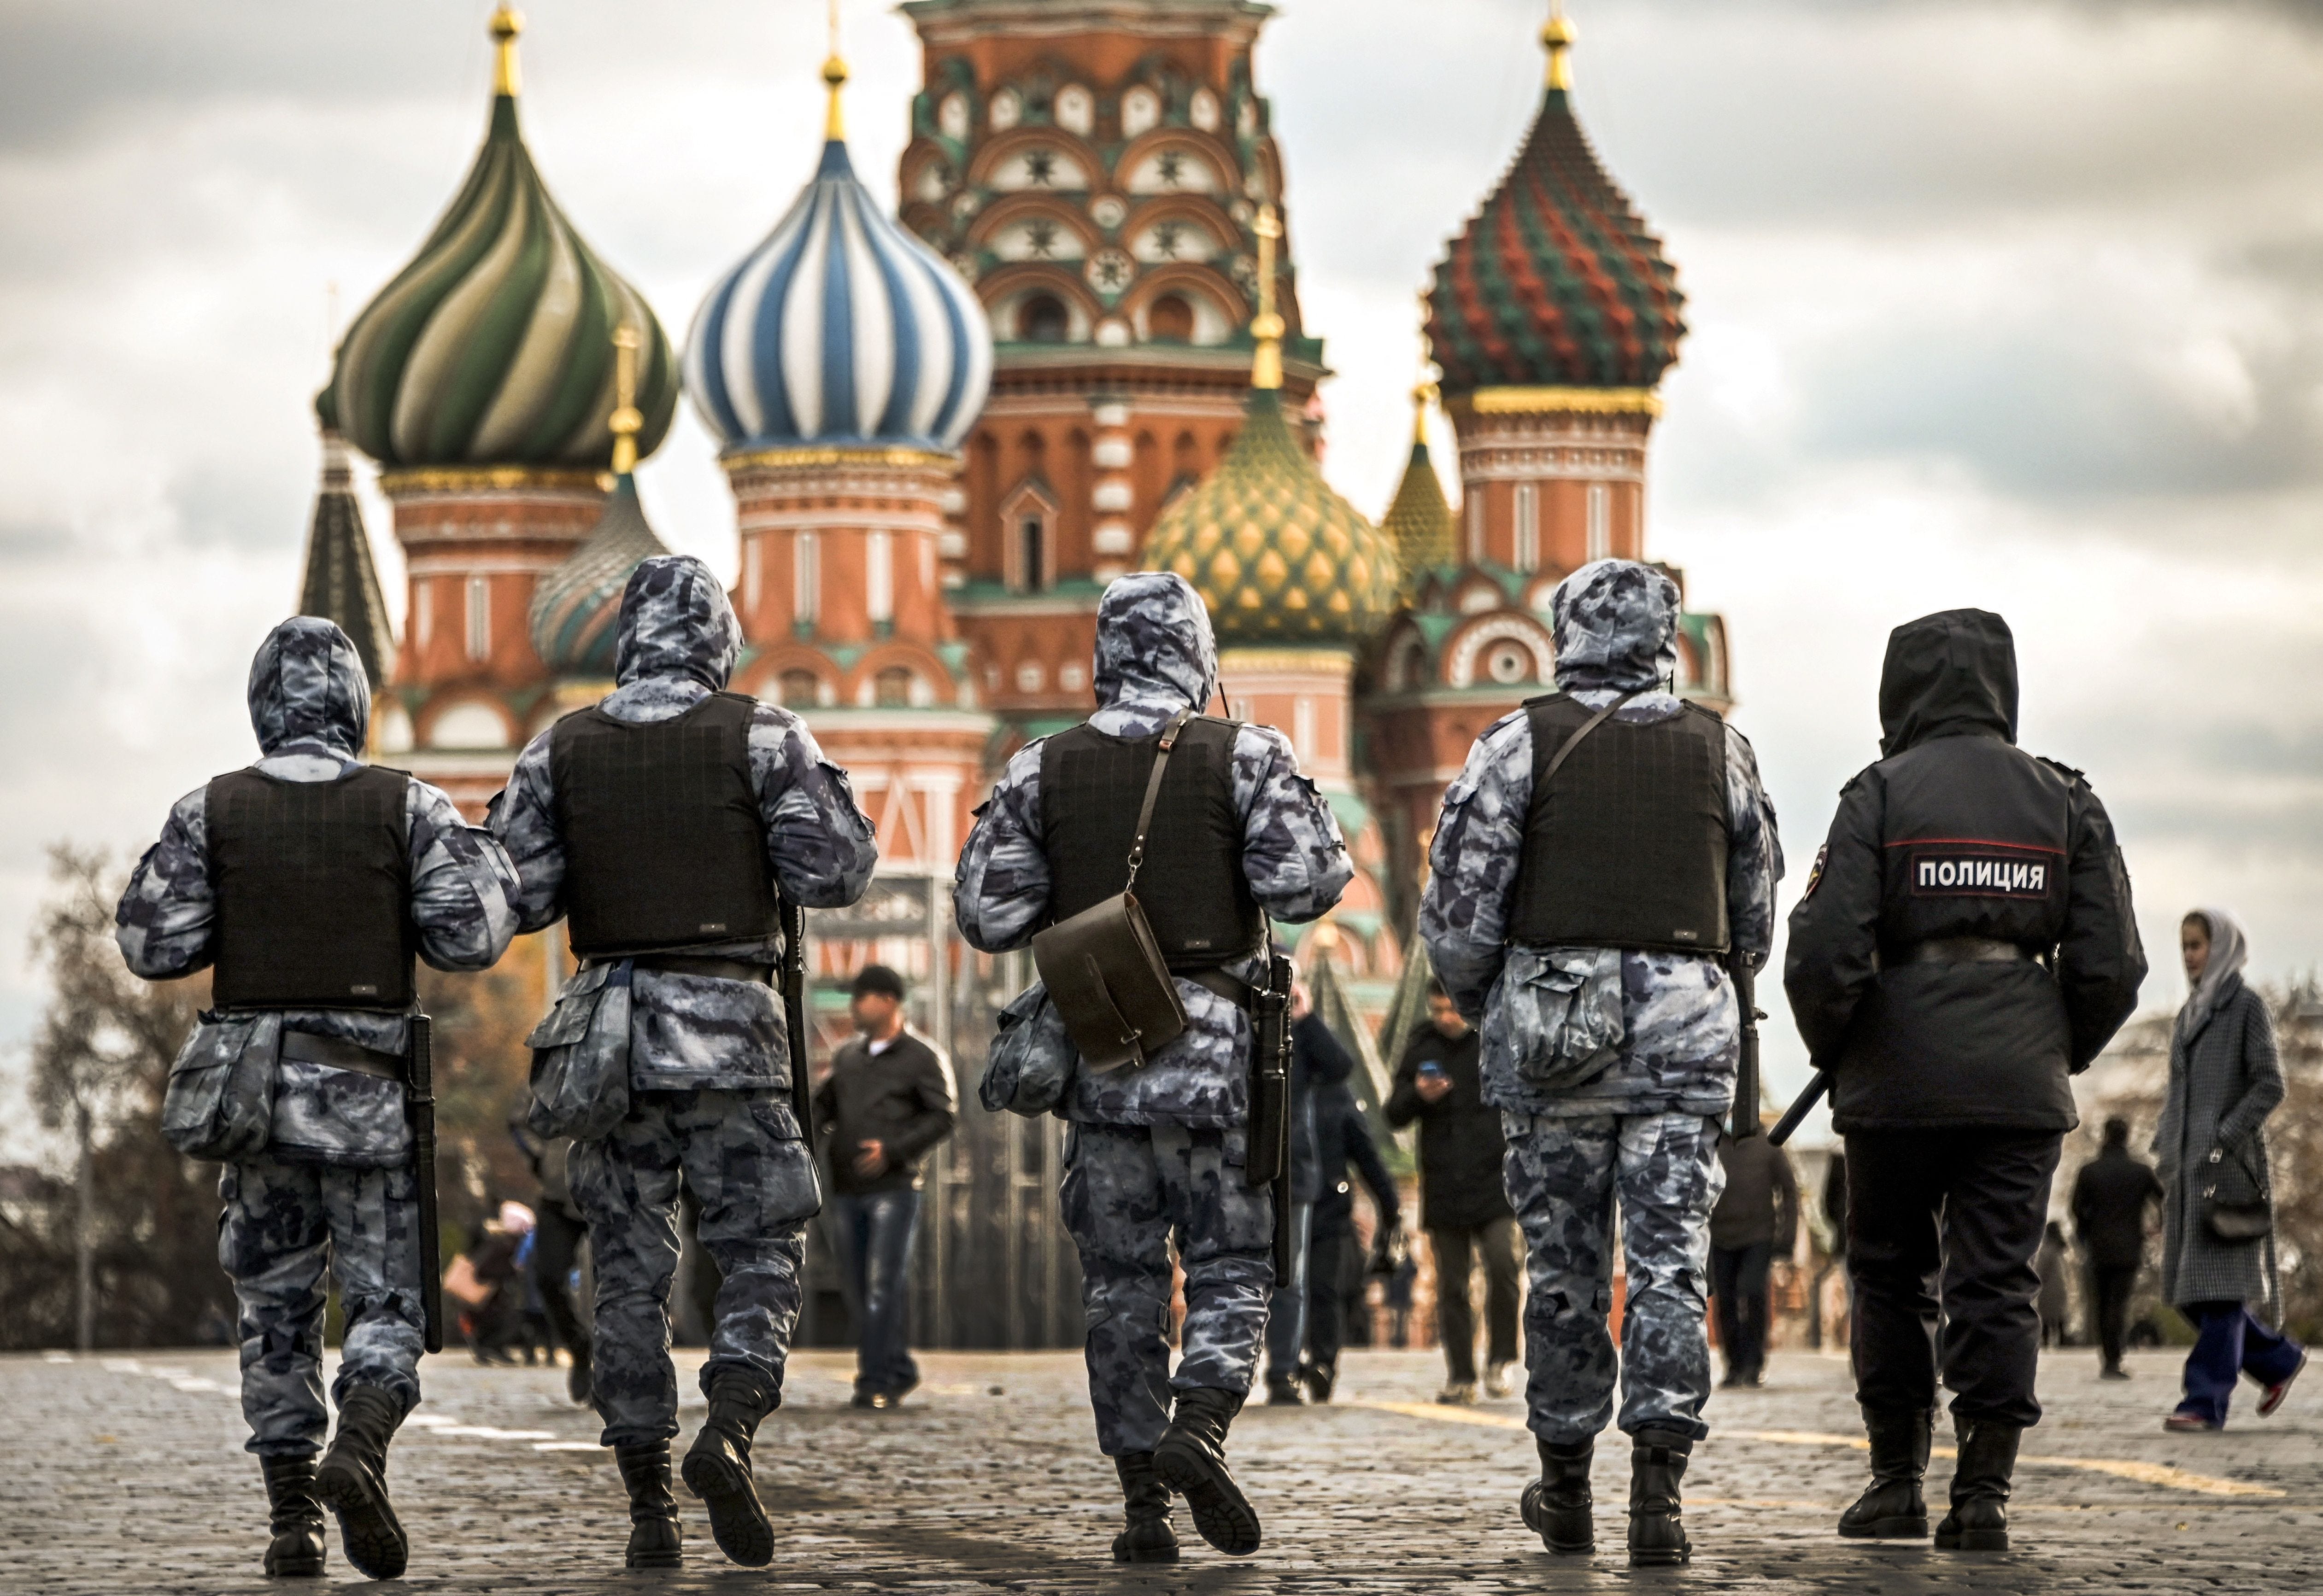 Russische Polizisten und Soldaten der Nationalgarde (Rosgvardia) patrouillieren auf dem Roten Platz im Zentrum von Moskau.